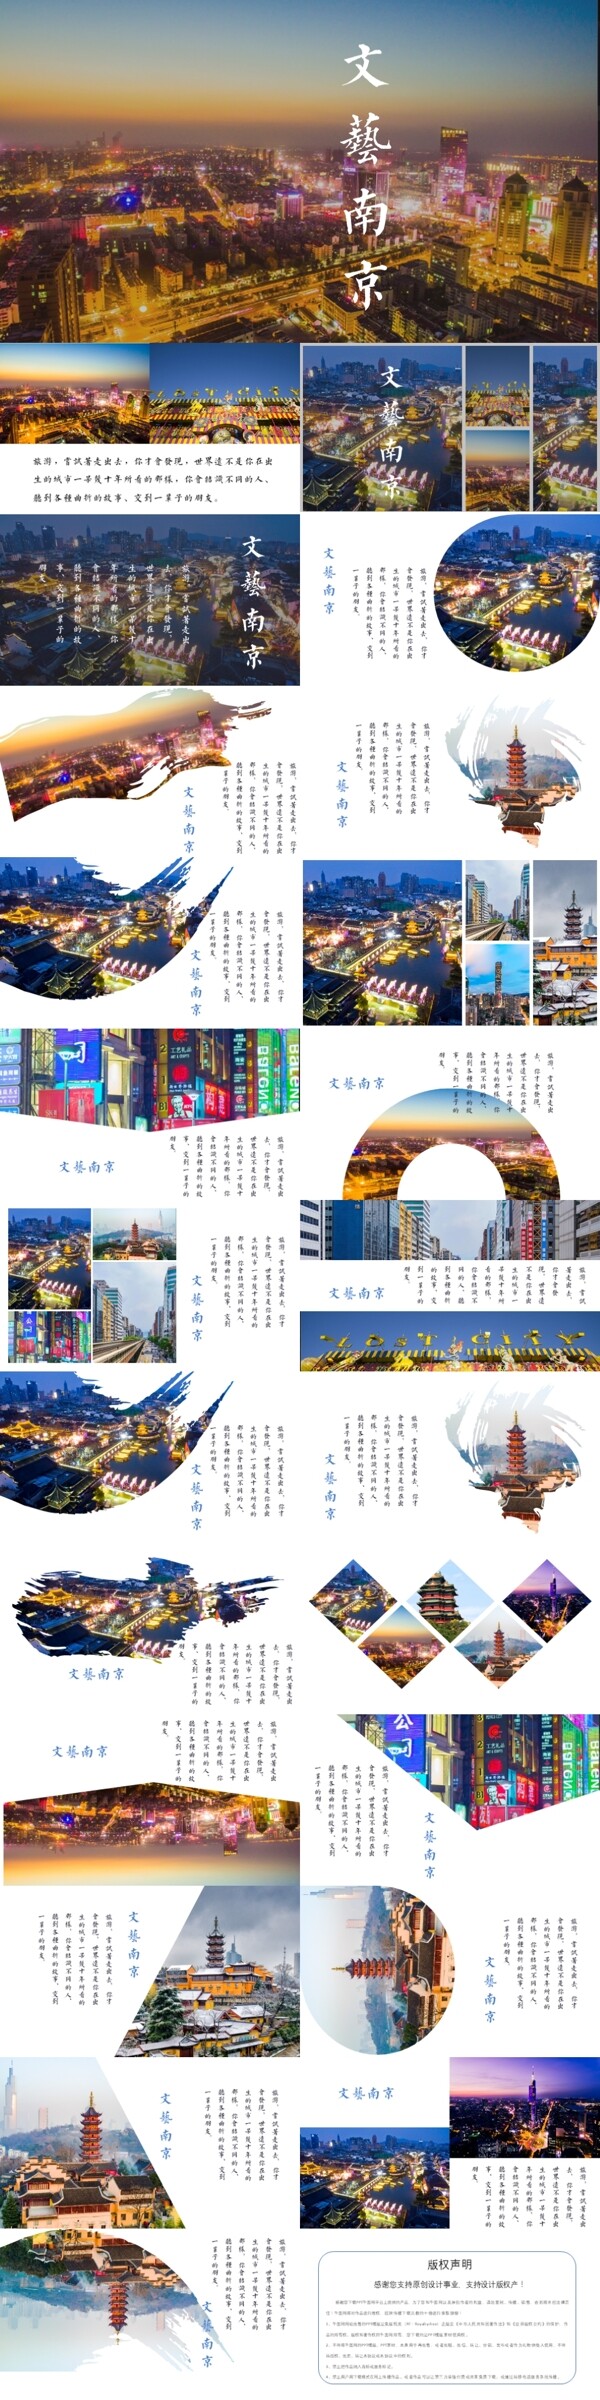 文艺南京杂志风旅游相册宣传PPT模板